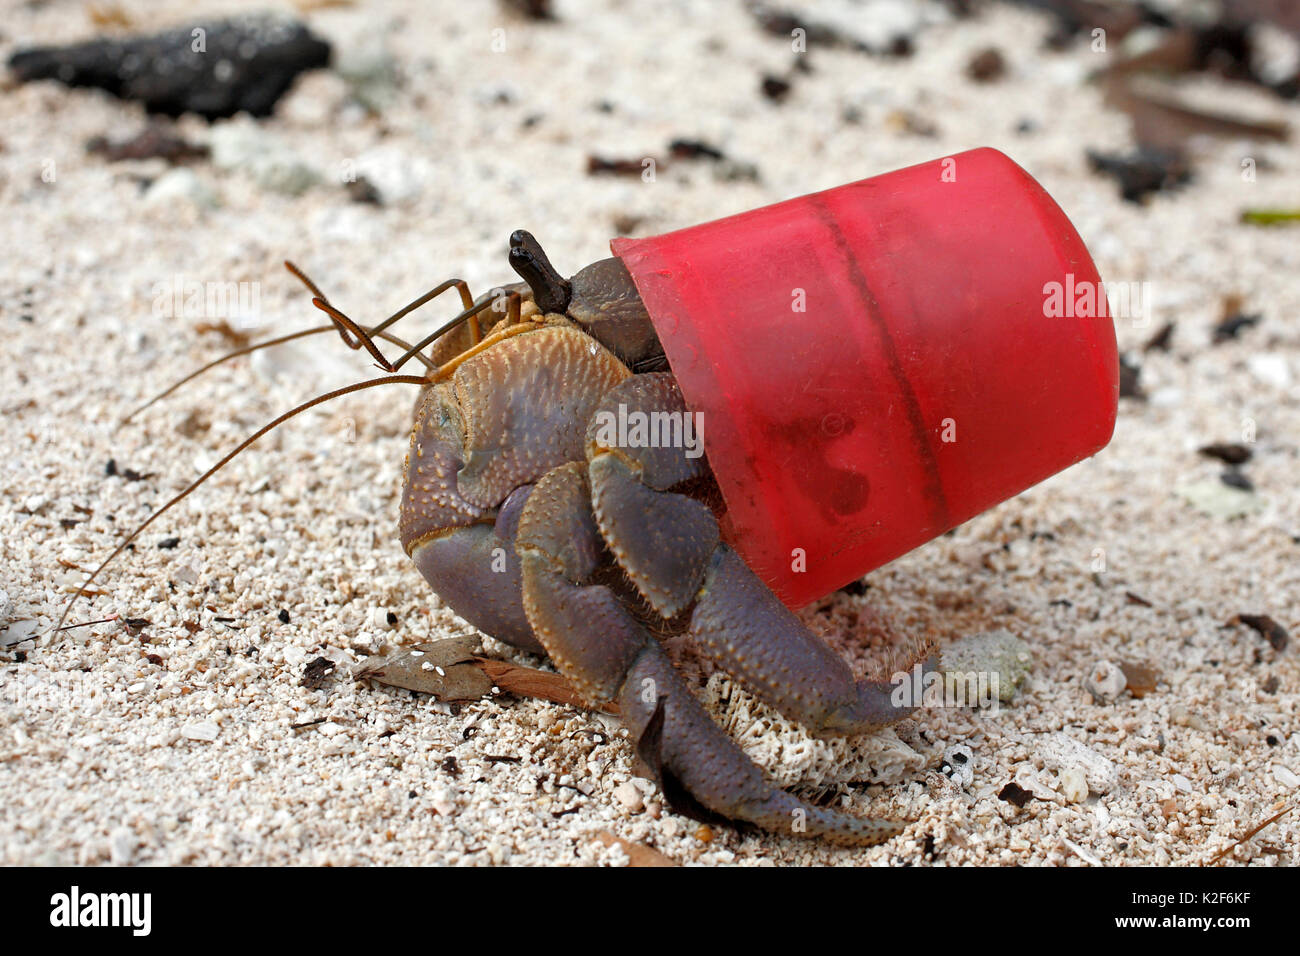 Cangrejo ermitaño terrestre, brevimanus Coenobita, usando un tapón del vaso rojo como un caparazón protector en lugar de los habituales de concha de moluscos. Foto de stock